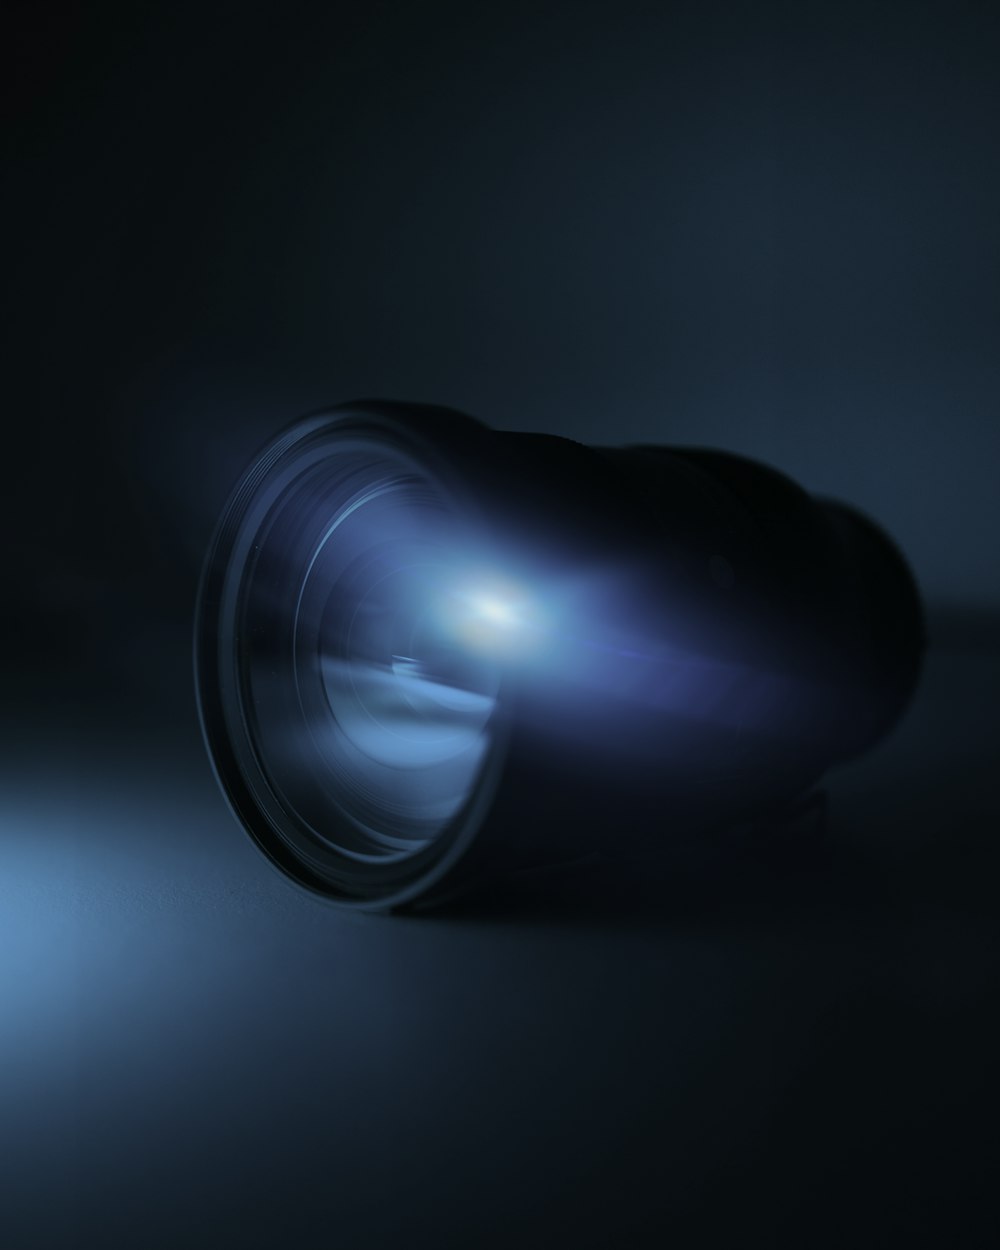 blue light bulb turned on in dark room photo – Free Blue Image on Unsplash